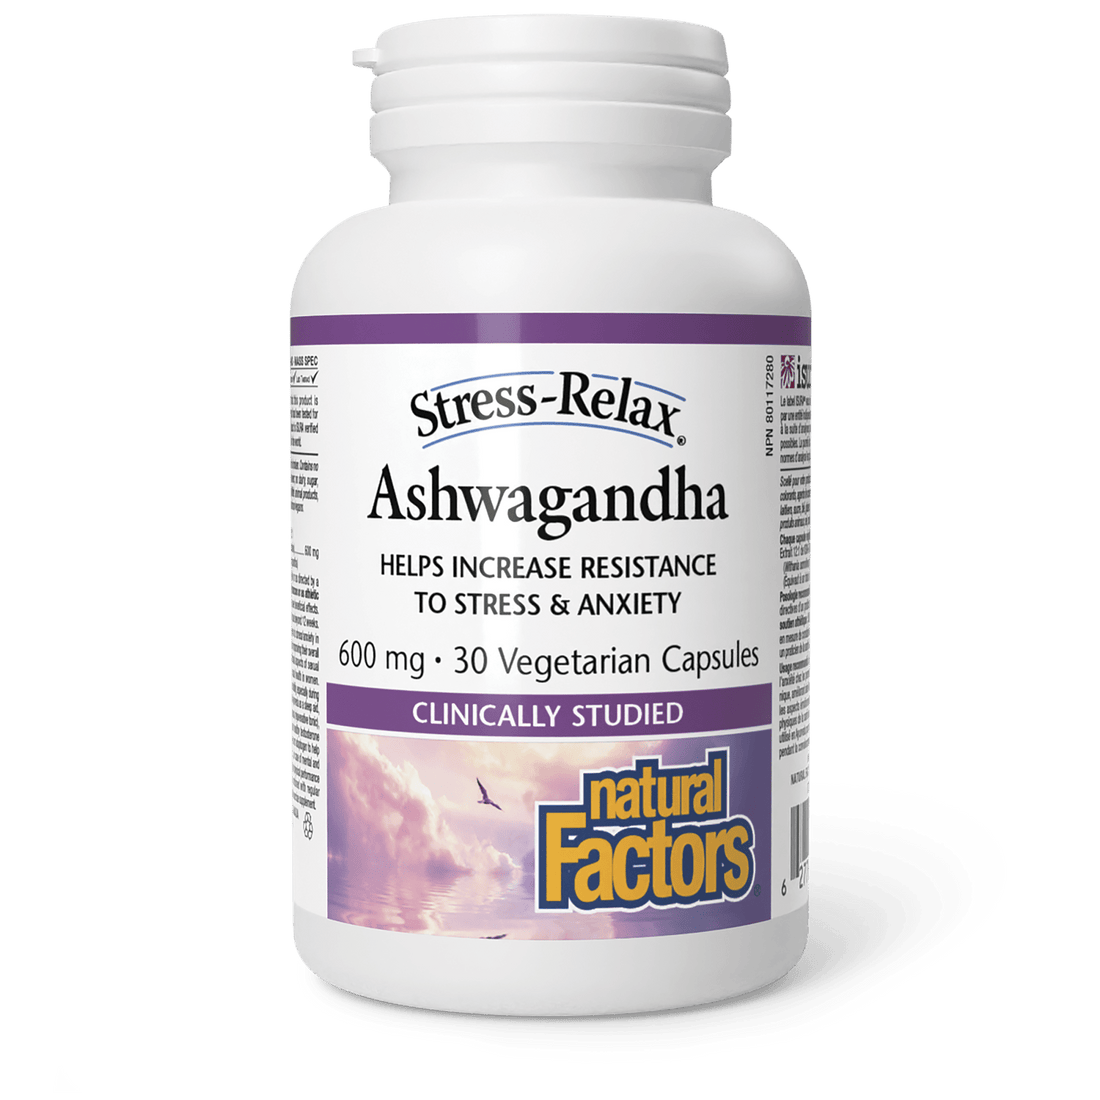 Natural Factors Stress-Relax Ashwagandha 30 Vegetarian Capsules